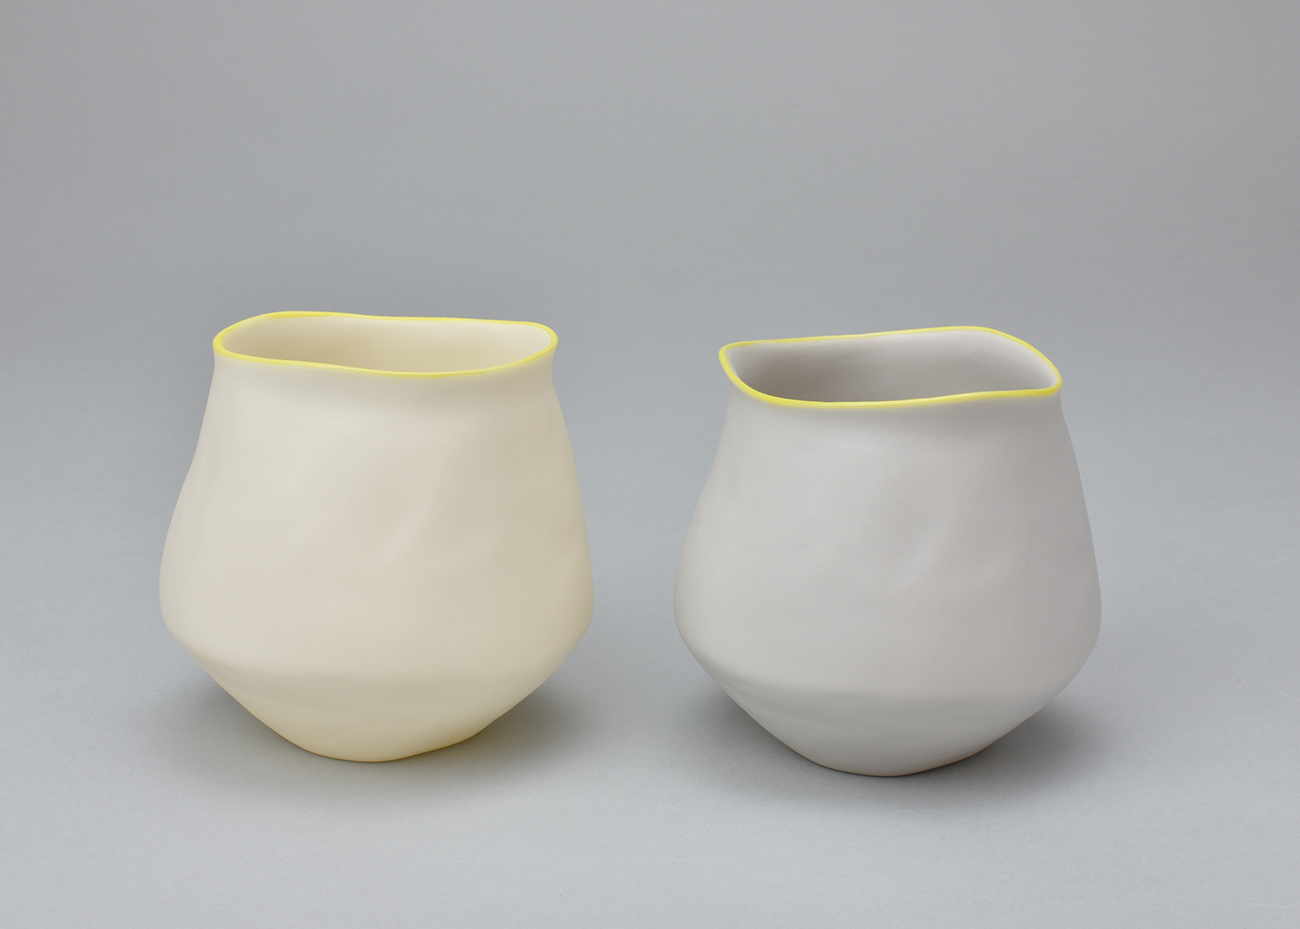 Mie Kongo 2016 - Cup Porcelain, Pigment, Glaze